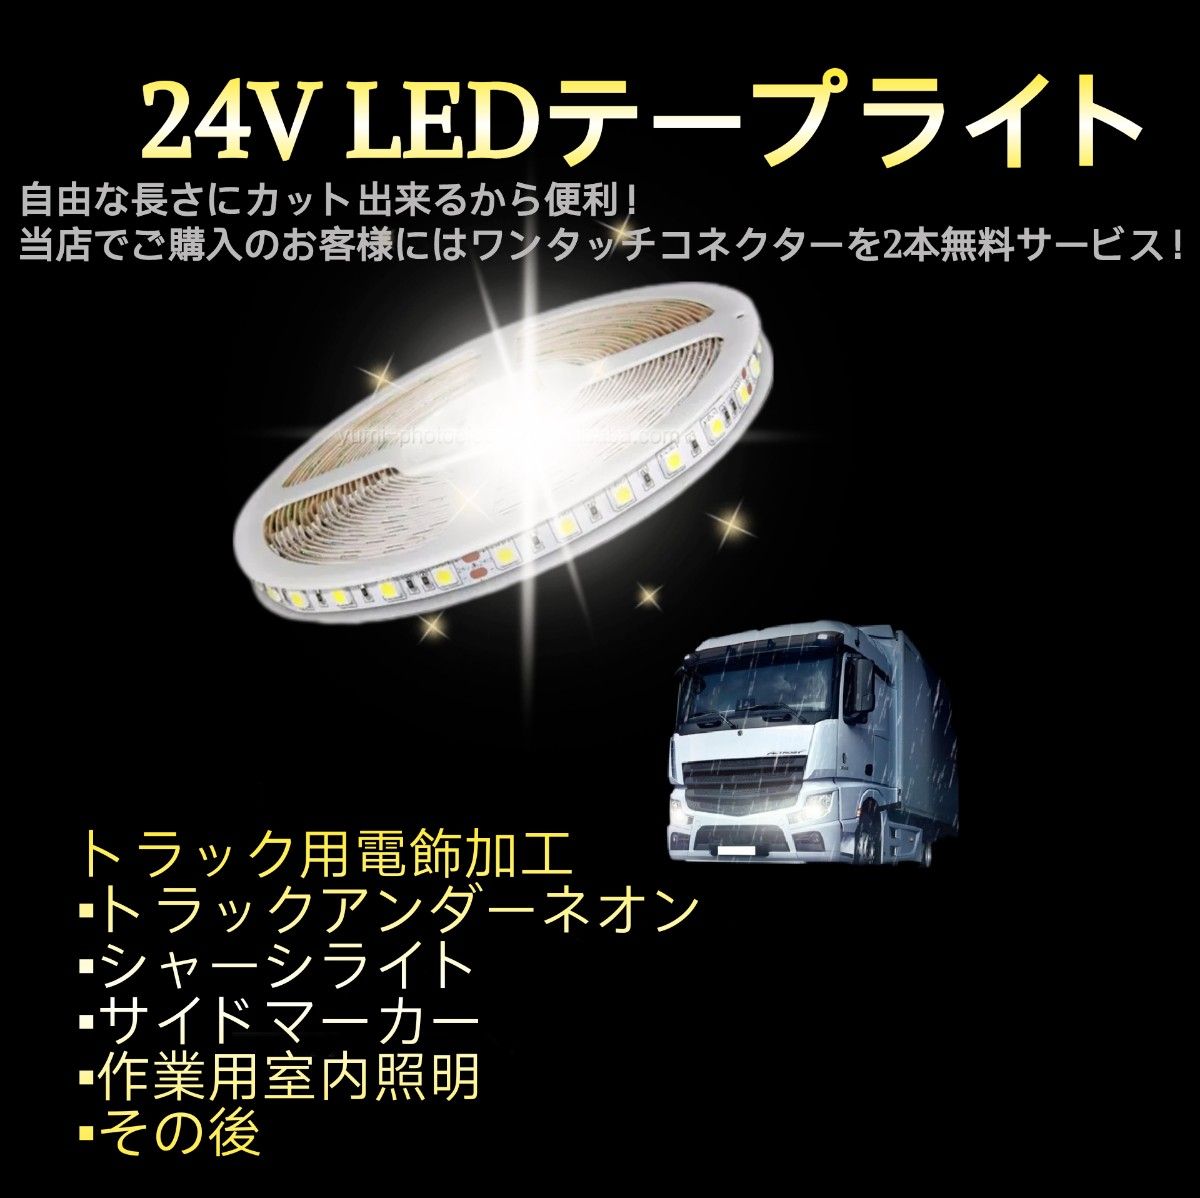 スーパーブライト 正規品 24V LED テープライト 防水 5m×1本 ブルー ワンタッチコネクター 2本付き トラック用品